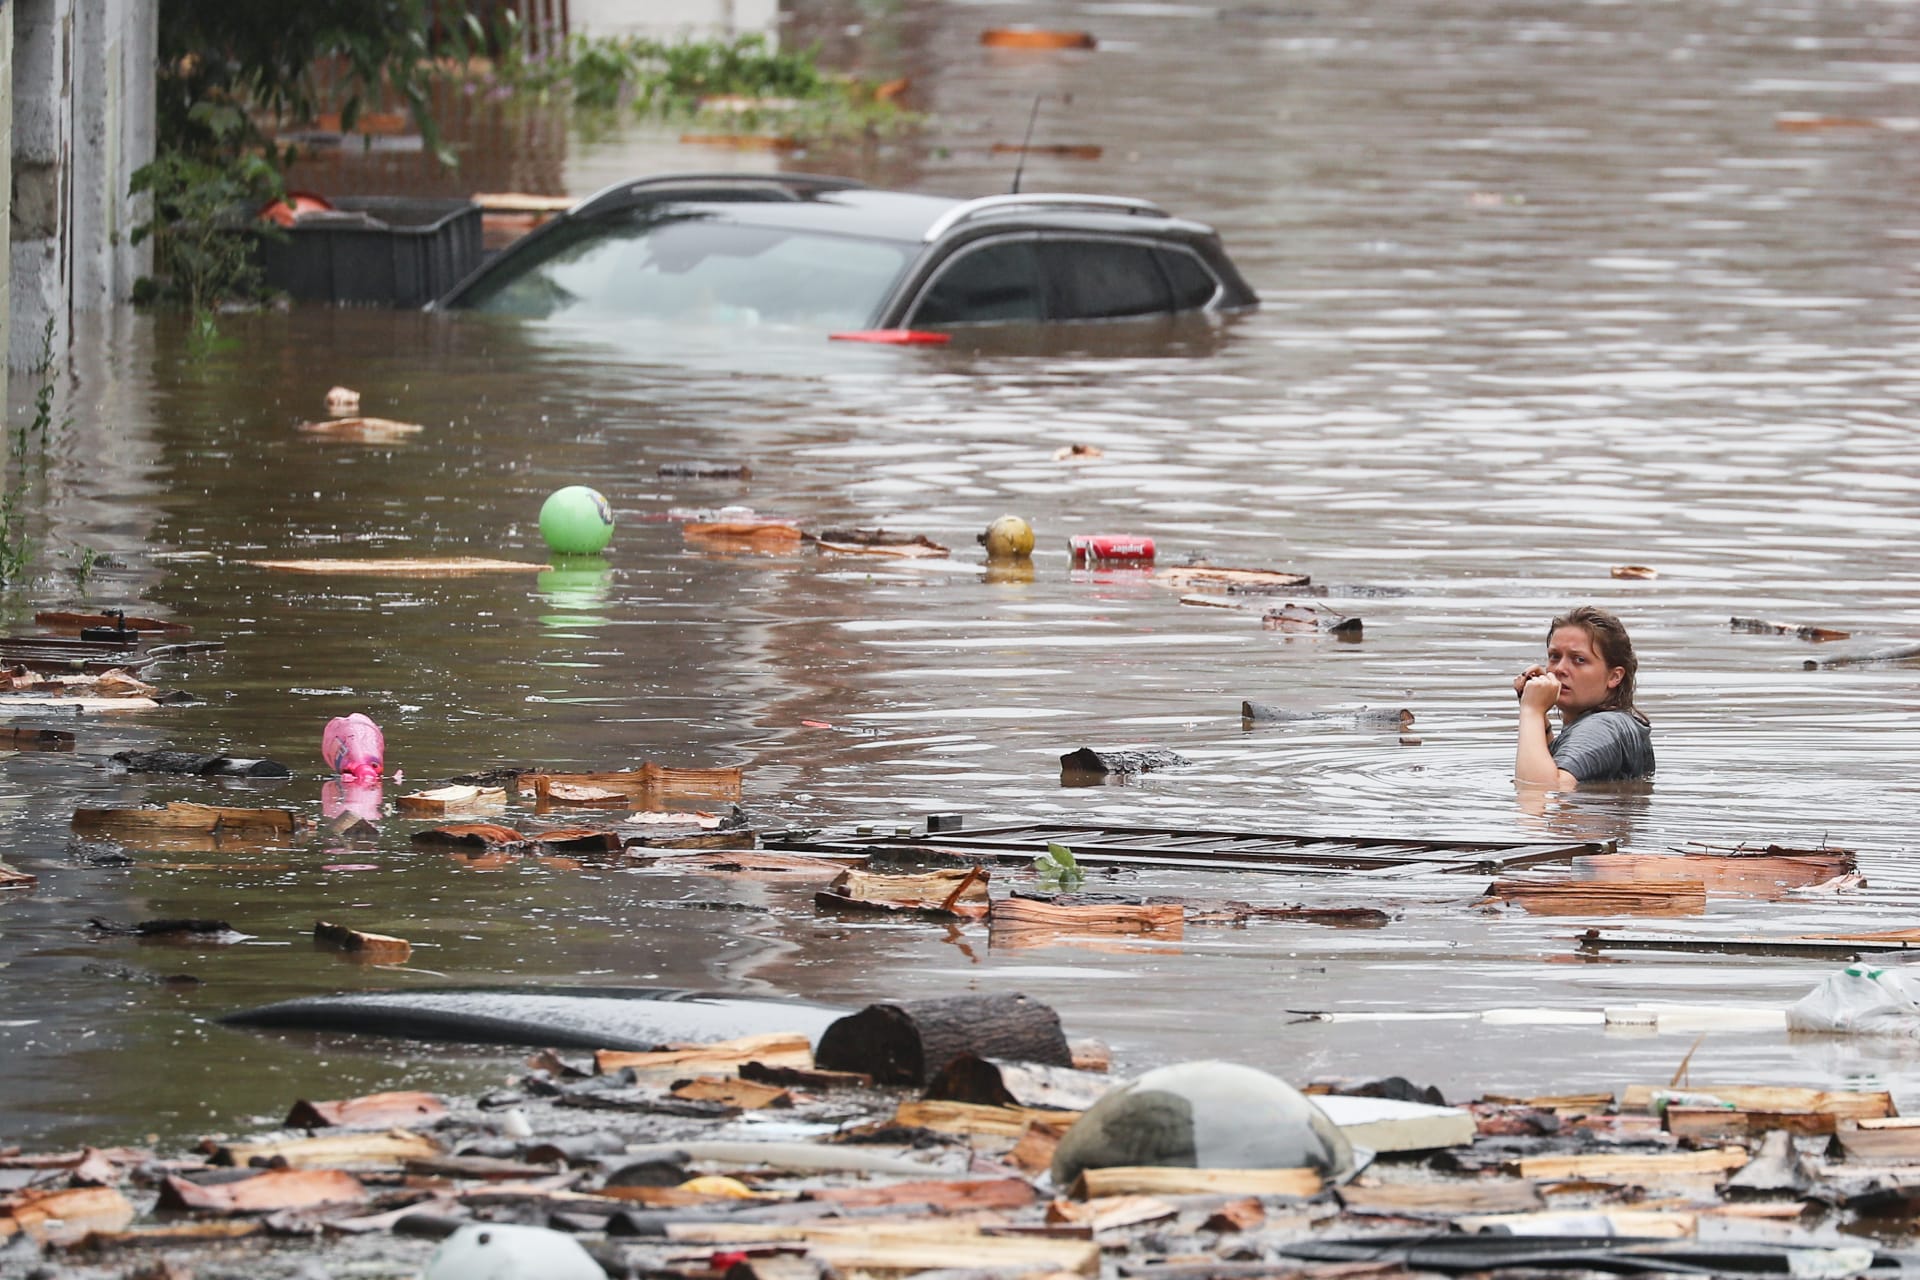 32 قتيلا على الأقل وعشرات المفقودين في أوروبا الغربية بسبب الفيضانات الشديدة - CNN Arabic